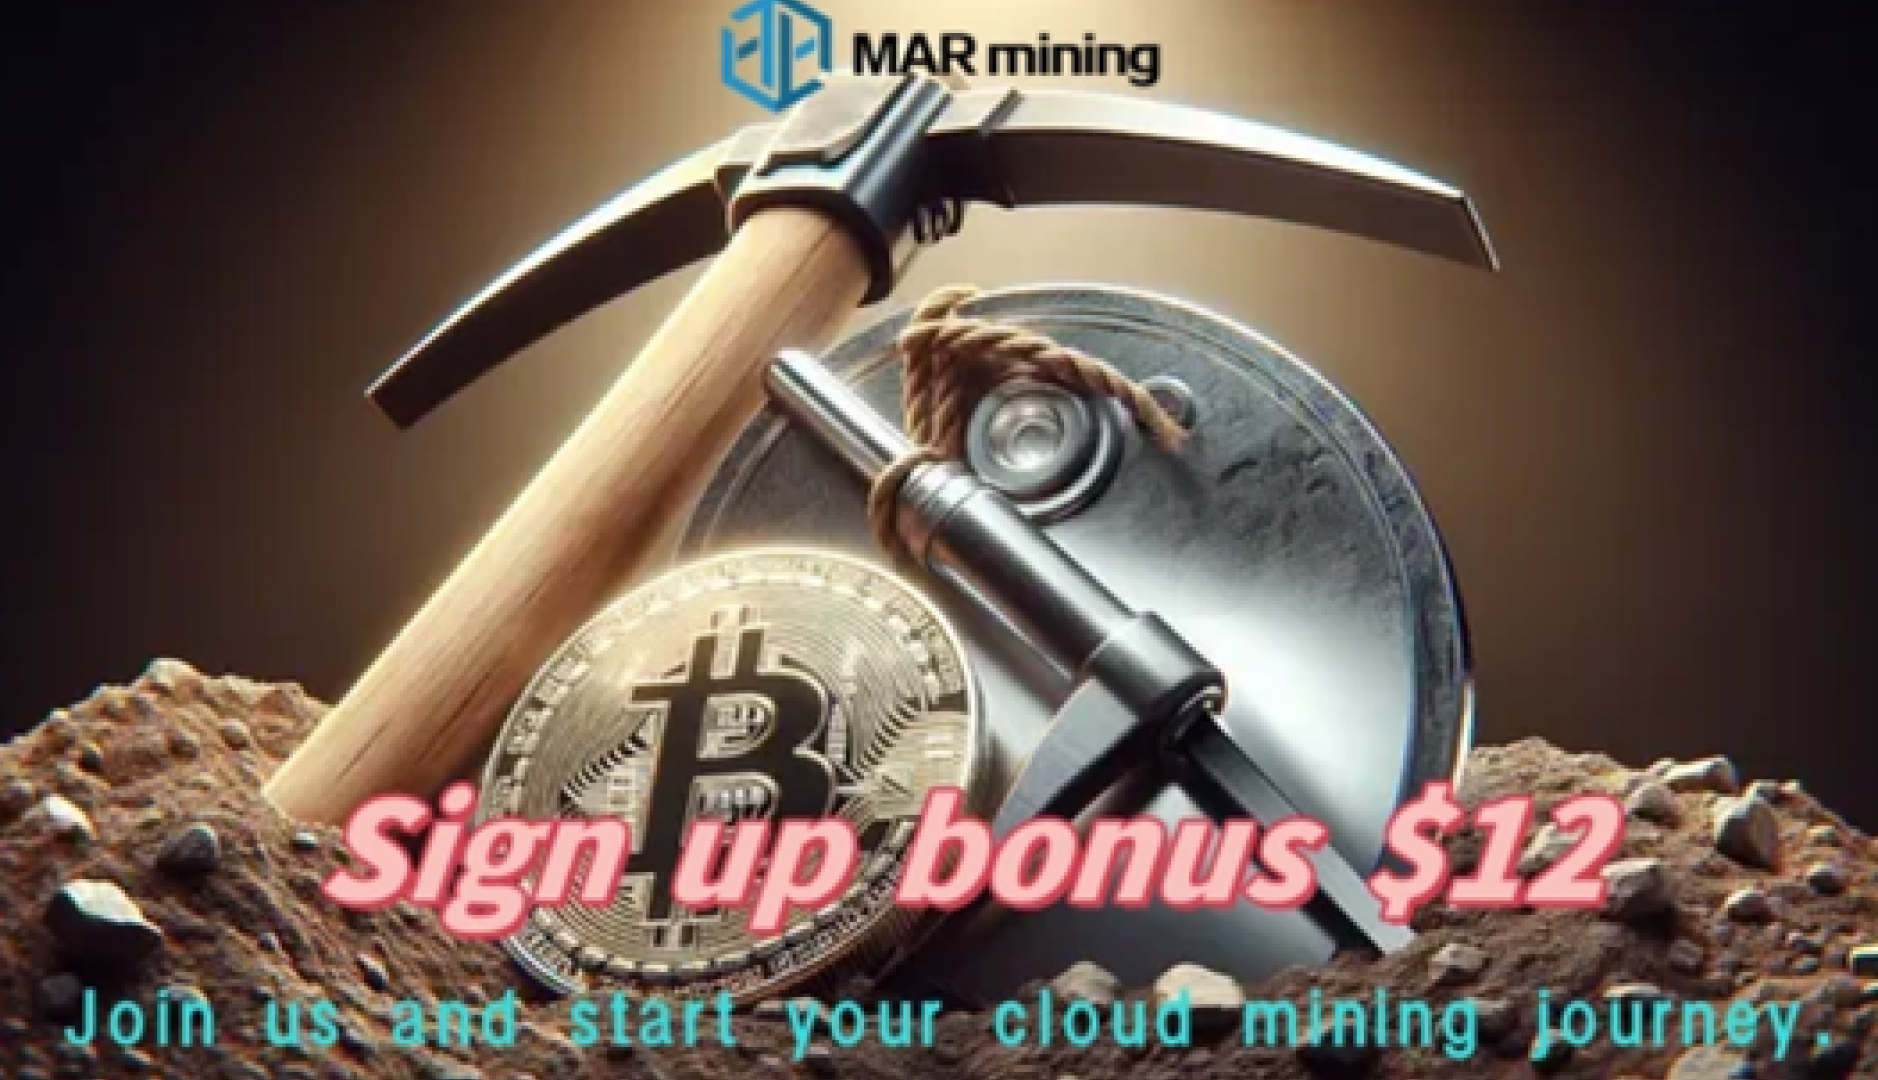 ¿Qué es la minería en la nube? MAR mining le enseña cómo utilizar la minería en la nube para obtener ingresos pasivos.